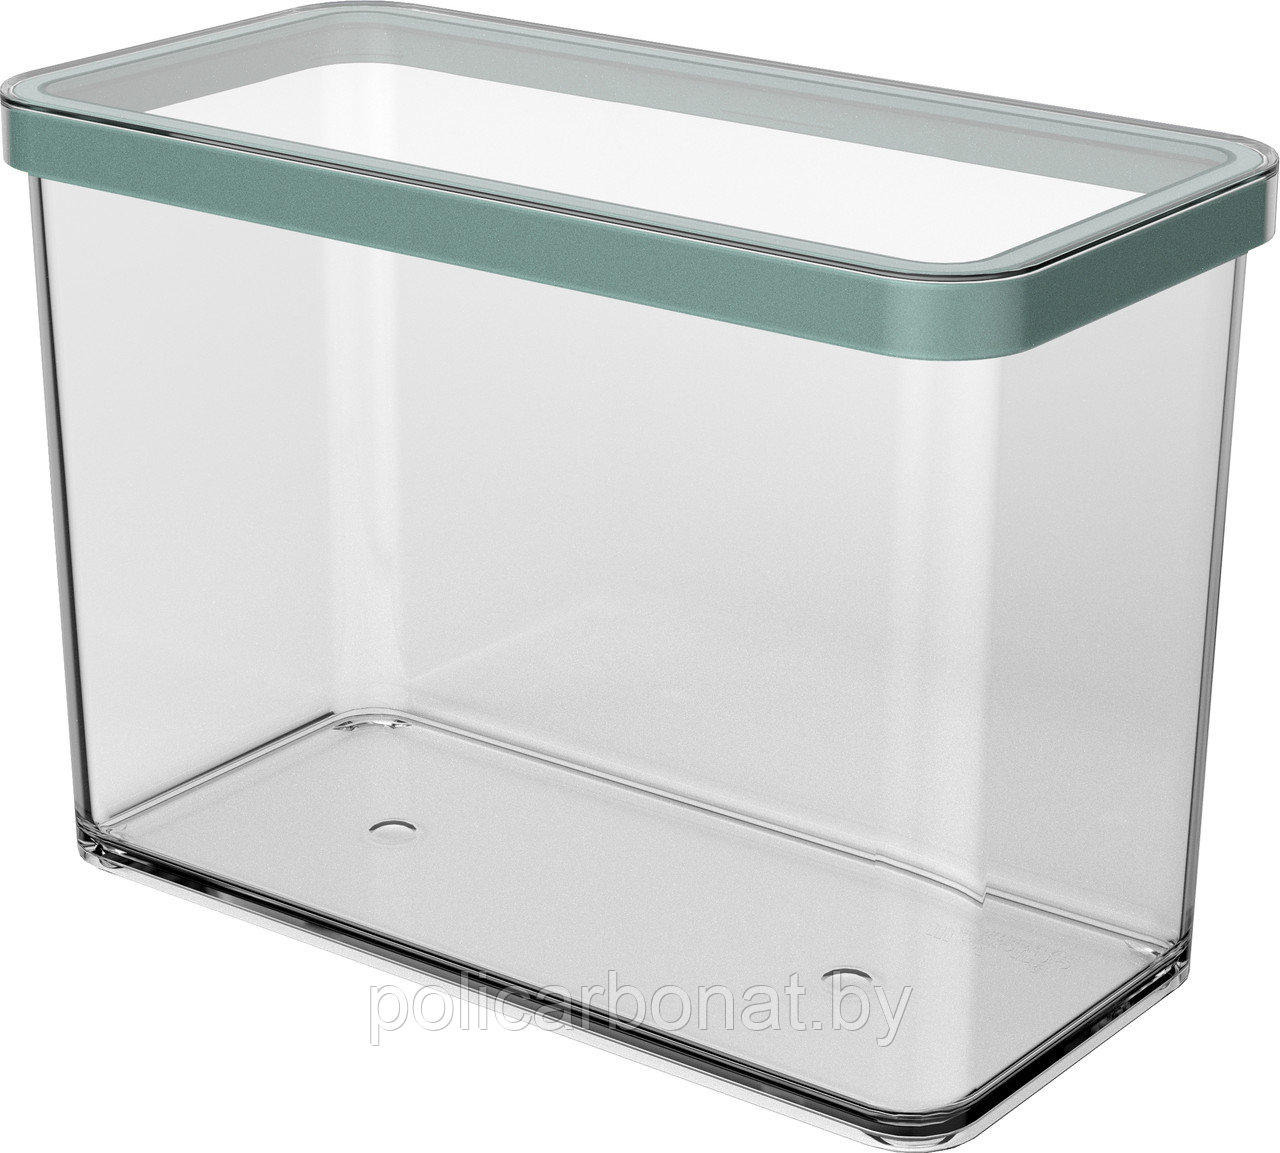 Контейнер для хранения Loft Premium 2,1 л, прозрачный/зеленый, фото 1